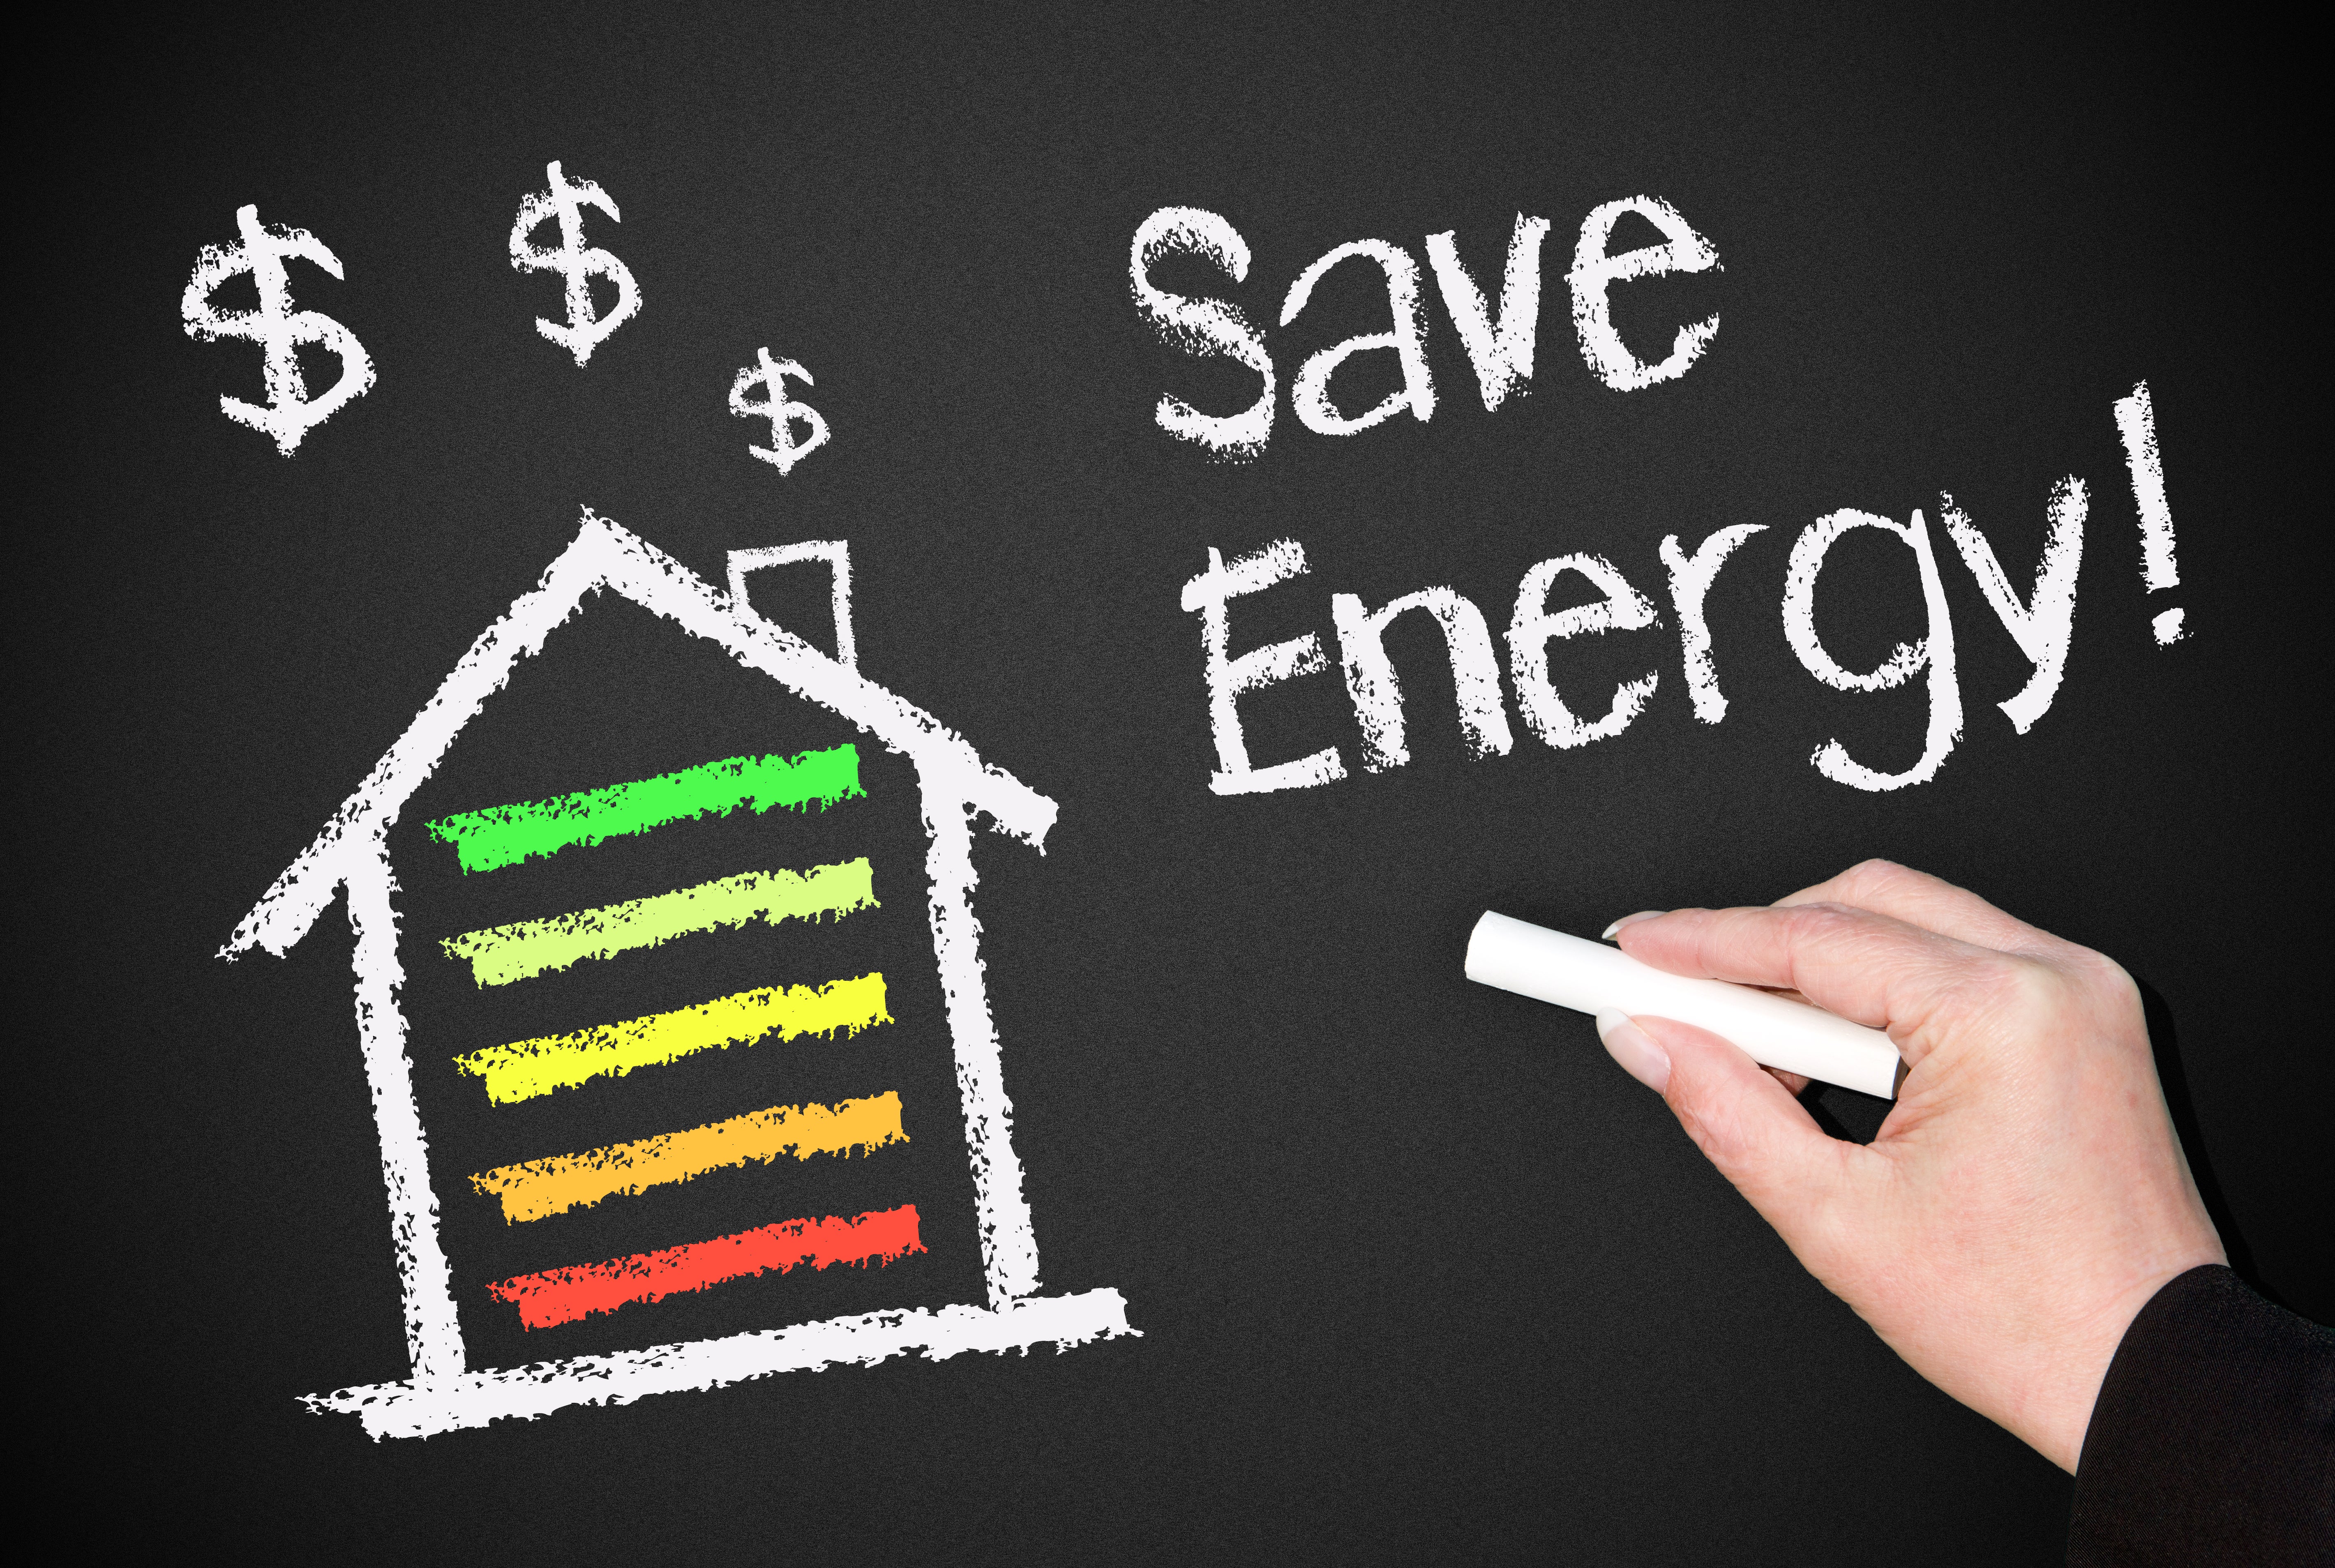 Indian ESCO energy efficiency finance world bank guarantees